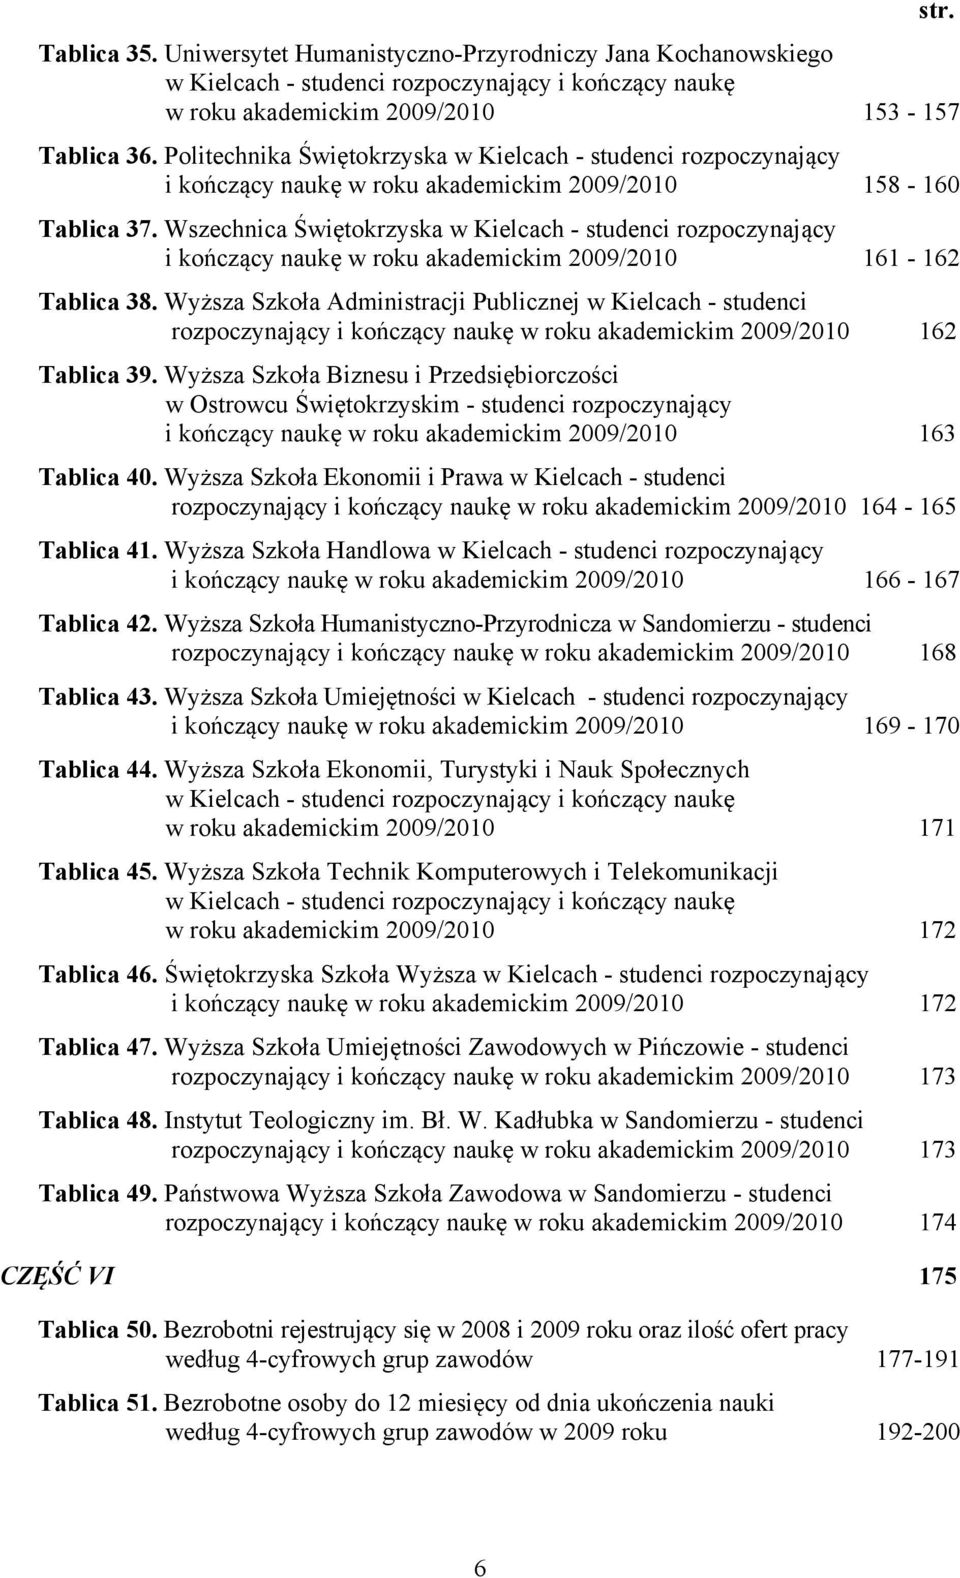 Wszechnica Świętokrzyska w Kielcach - studenci rozpoczynający i kończący naukę w roku akademickim 2009/2010 161-162 Tablica 38.